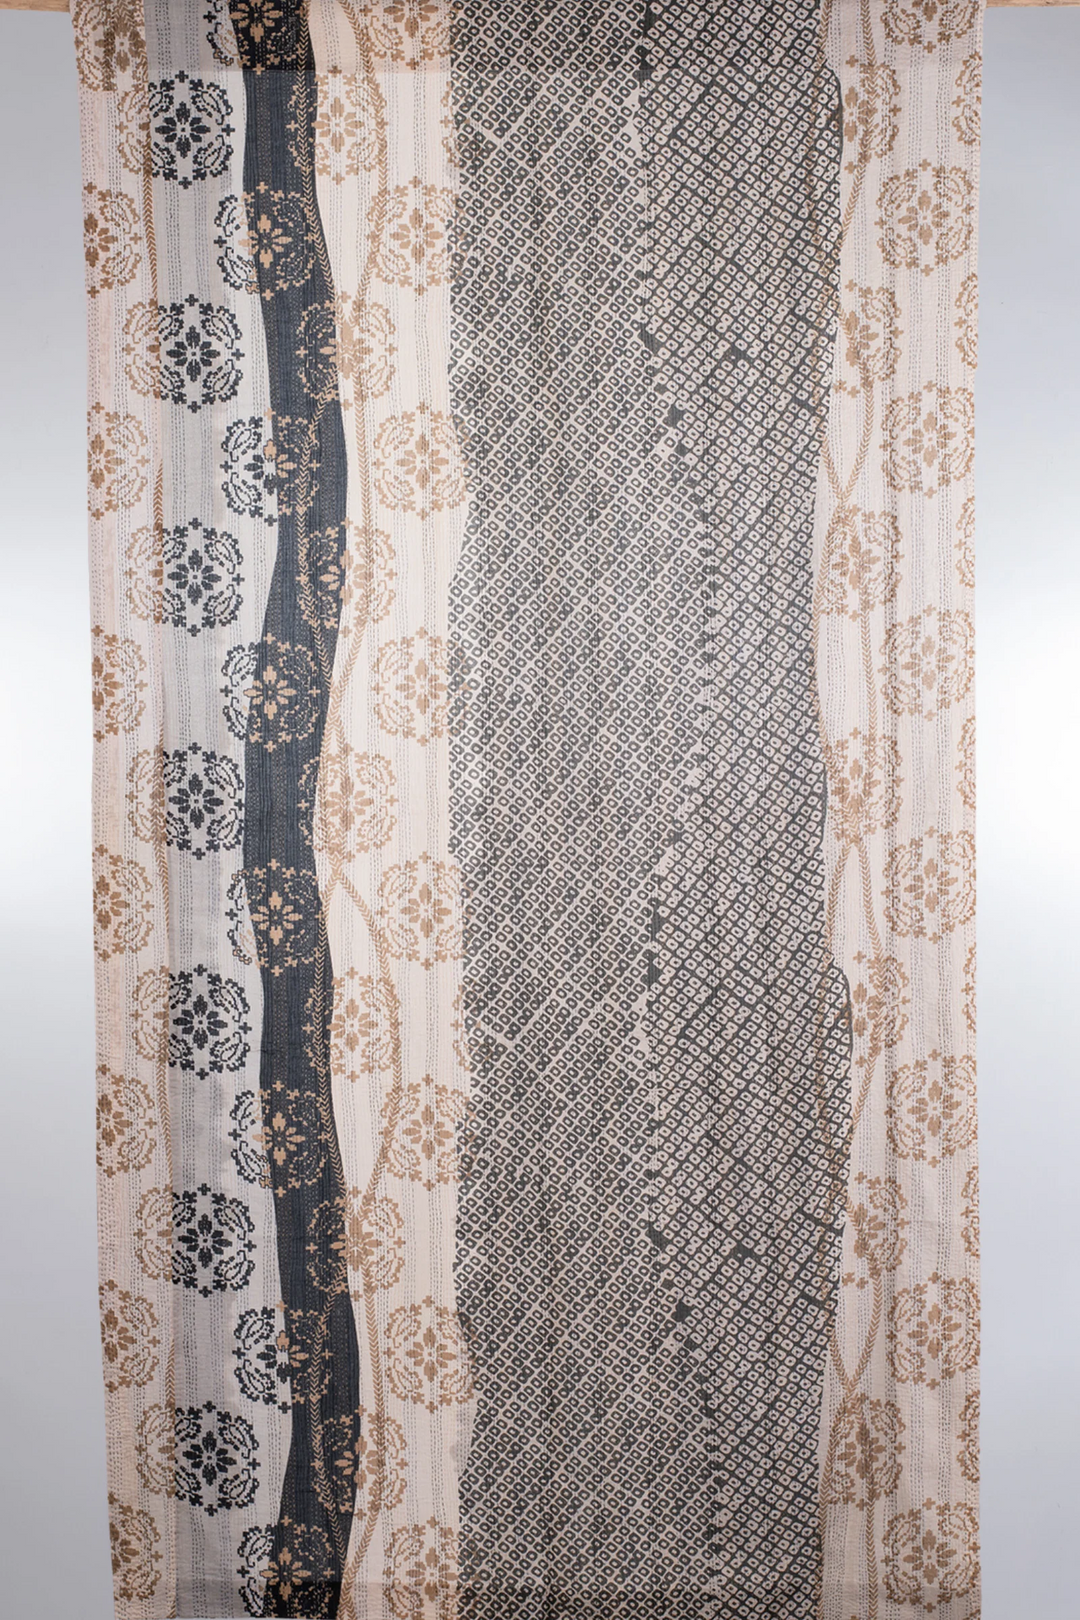 Kimono Cotton Kantha Curtain -Gray -